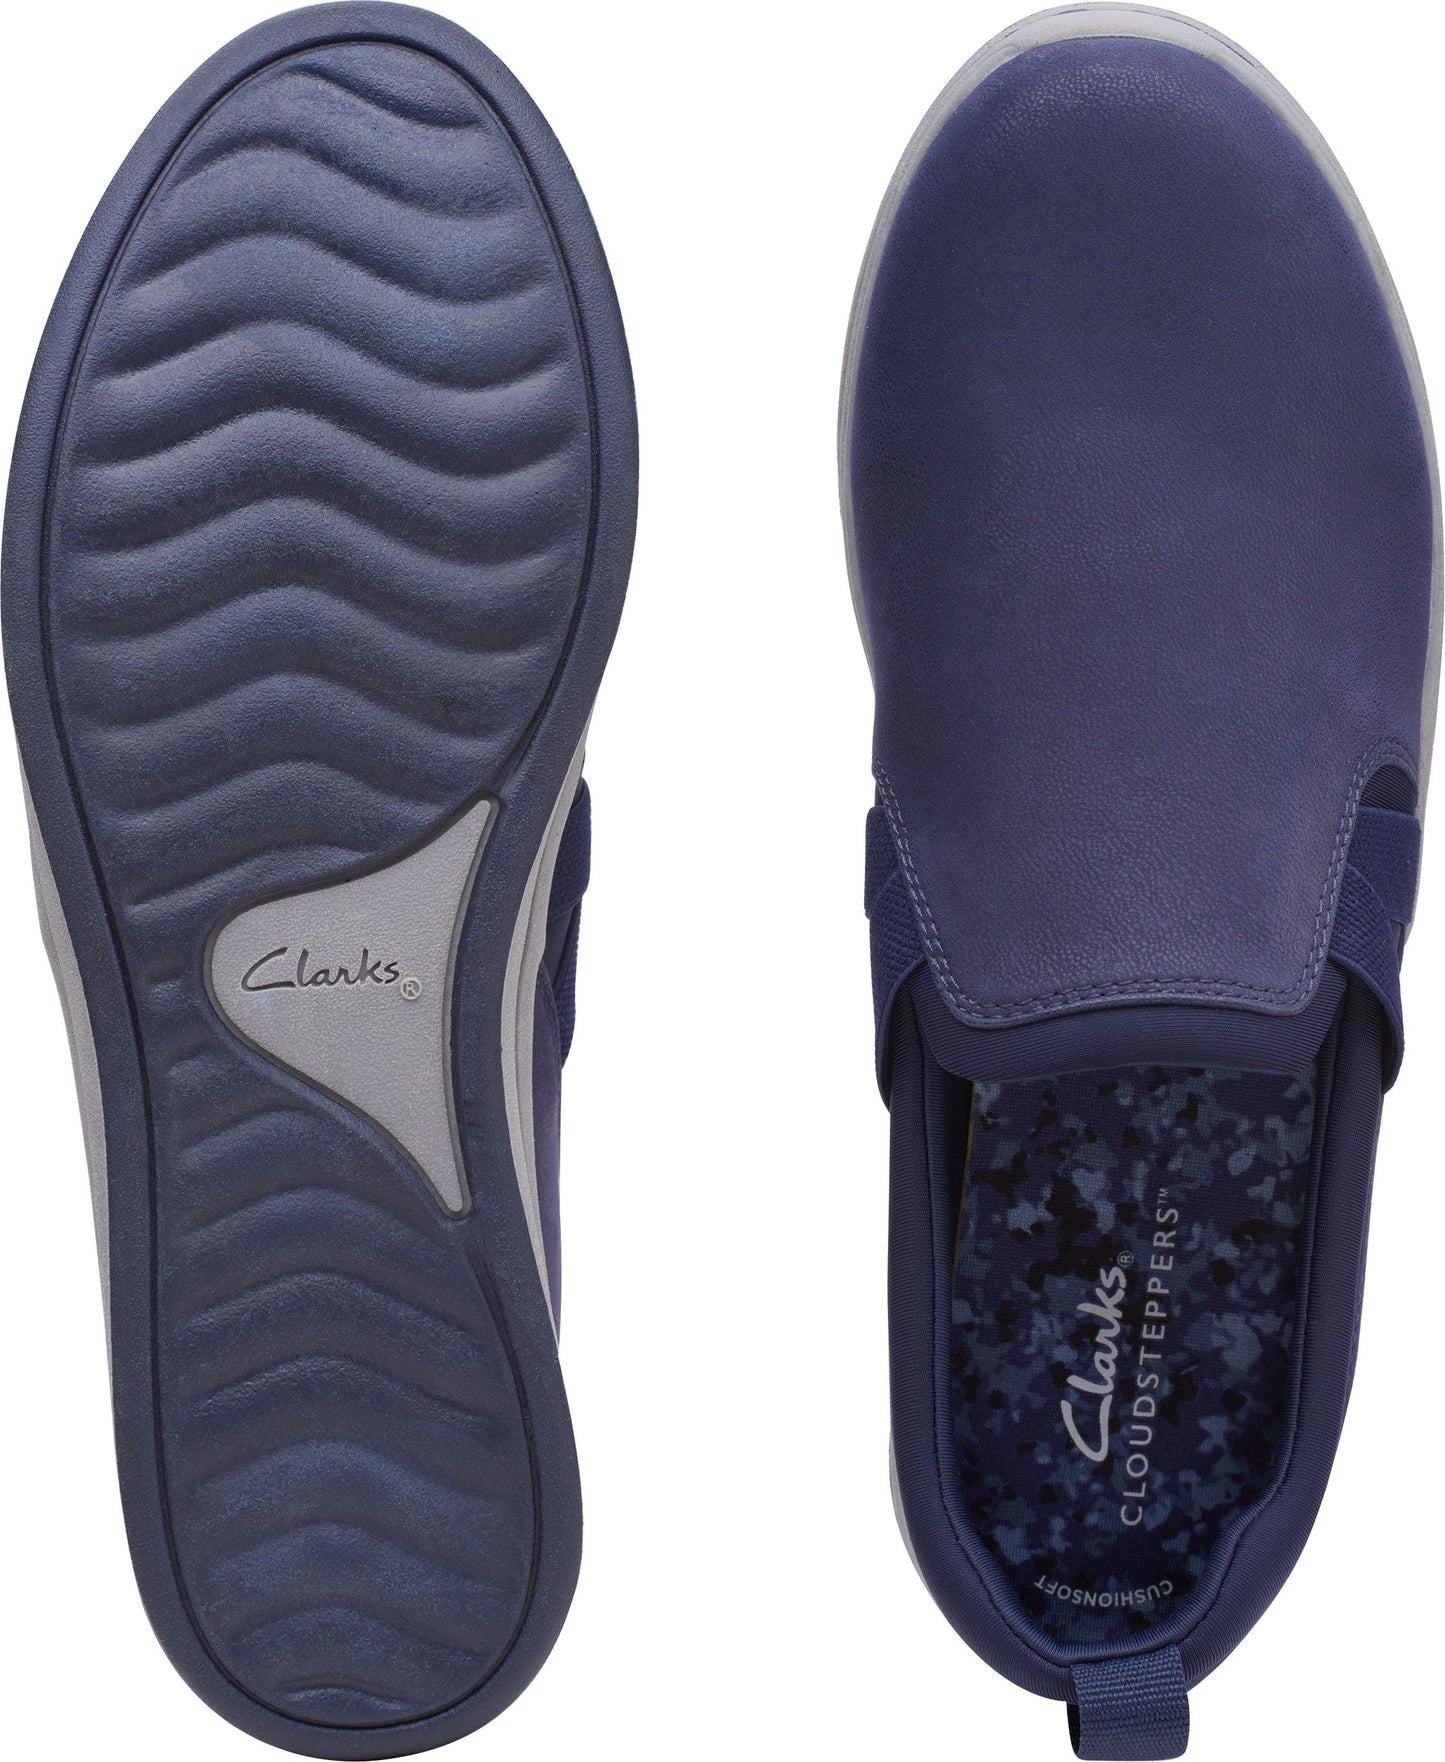 Clarks Shoes Breeze Bali Blue